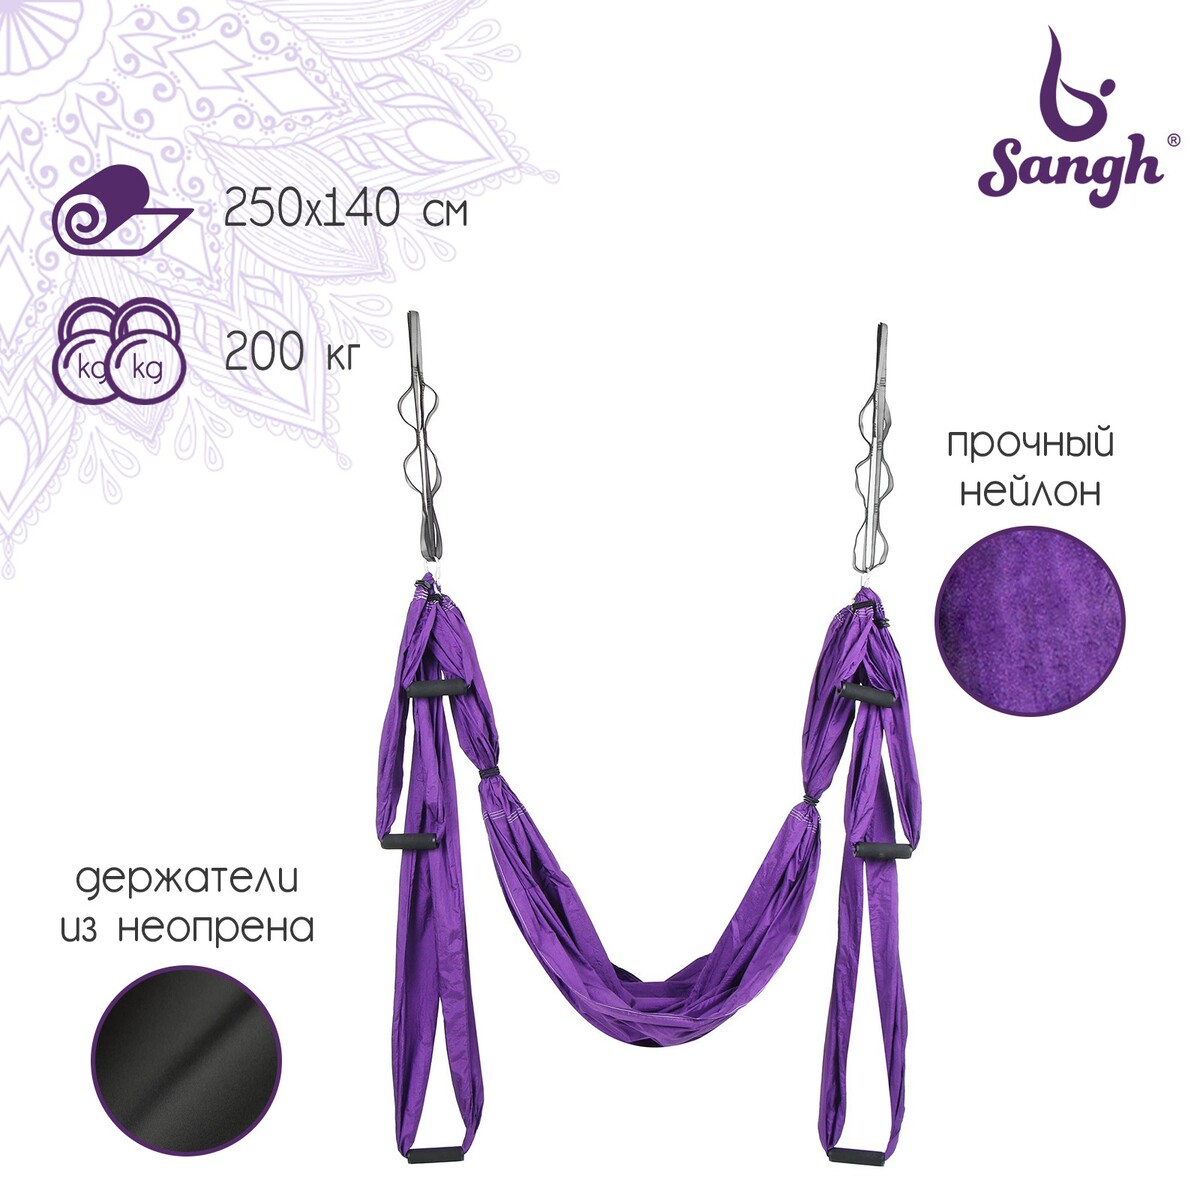 Гамак для йоги sangh, 250×140 см, цвет фиолетовый гамак для хорьков osso из флиса с карманом 43 х 33 см d 14 см микс ов